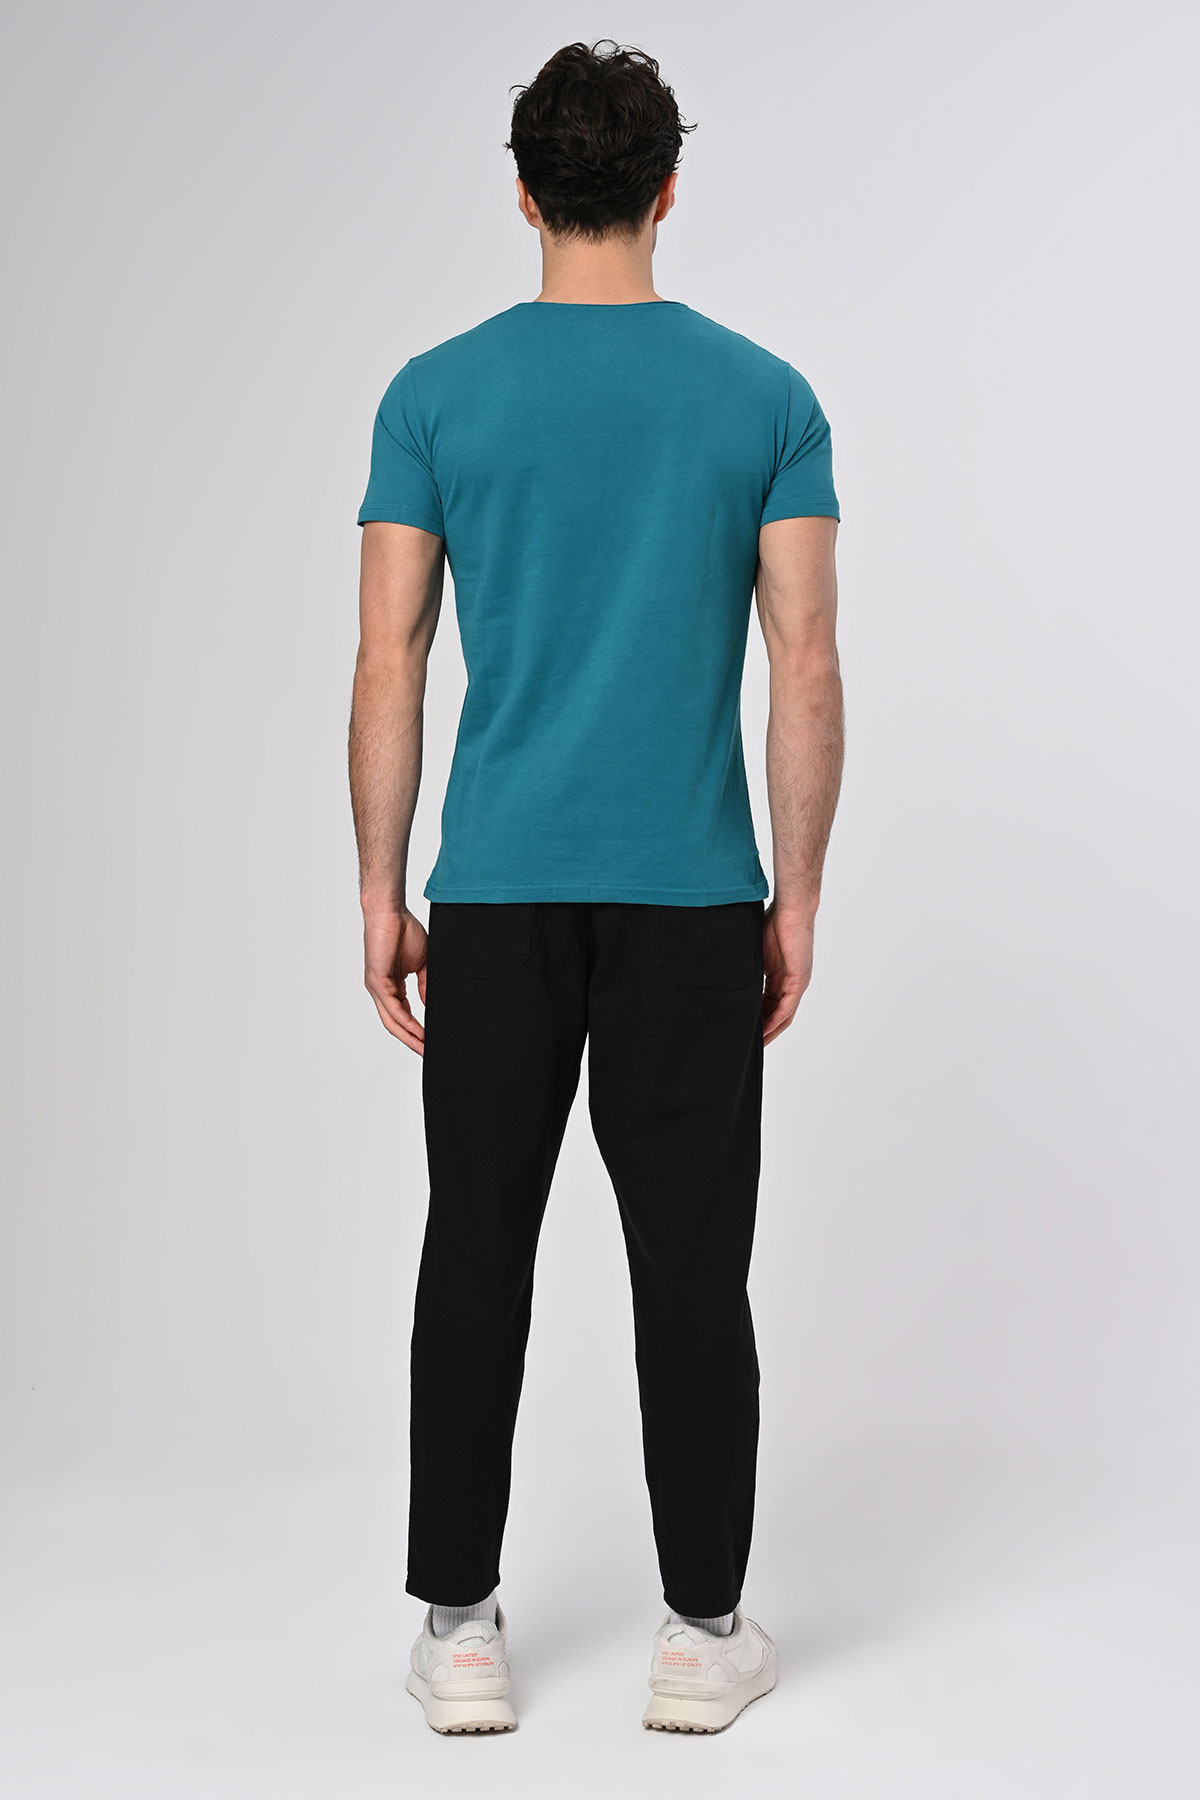 1453 Tasarım Pamuk Mavi T-shirt